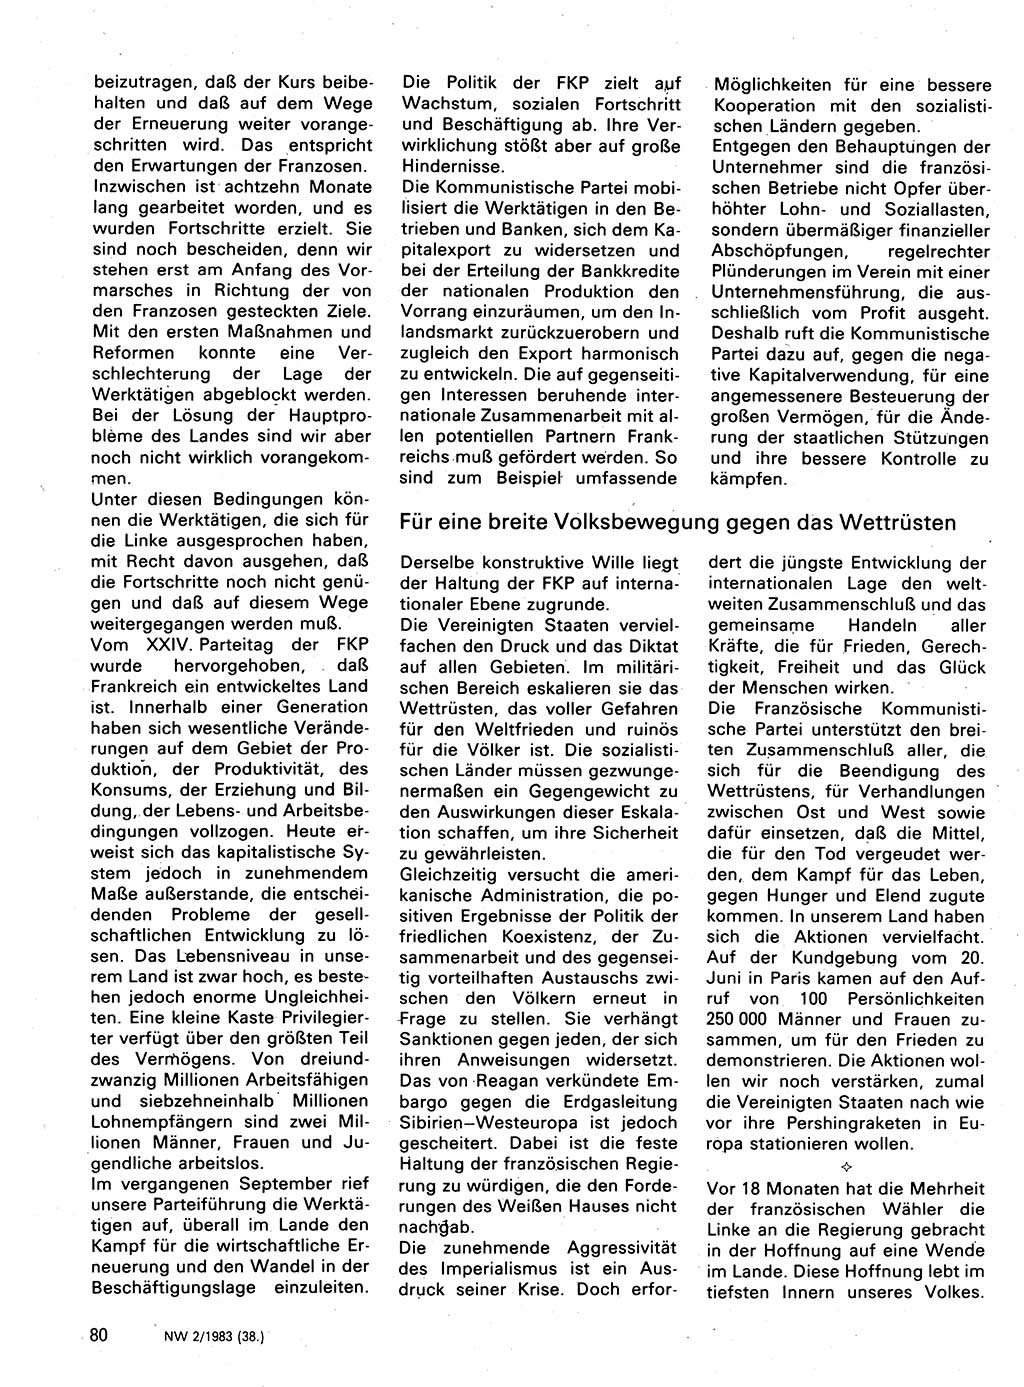 Neuer Weg (NW), Organ des Zentralkomitees (ZK) der SED (Sozialistische Einheitspartei Deutschlands) für Fragen des Parteilebens, 38. Jahrgang [Deutsche Demokratische Republik (DDR)] 1983, Seite 80 (NW ZK SED DDR 1983, S. 80)